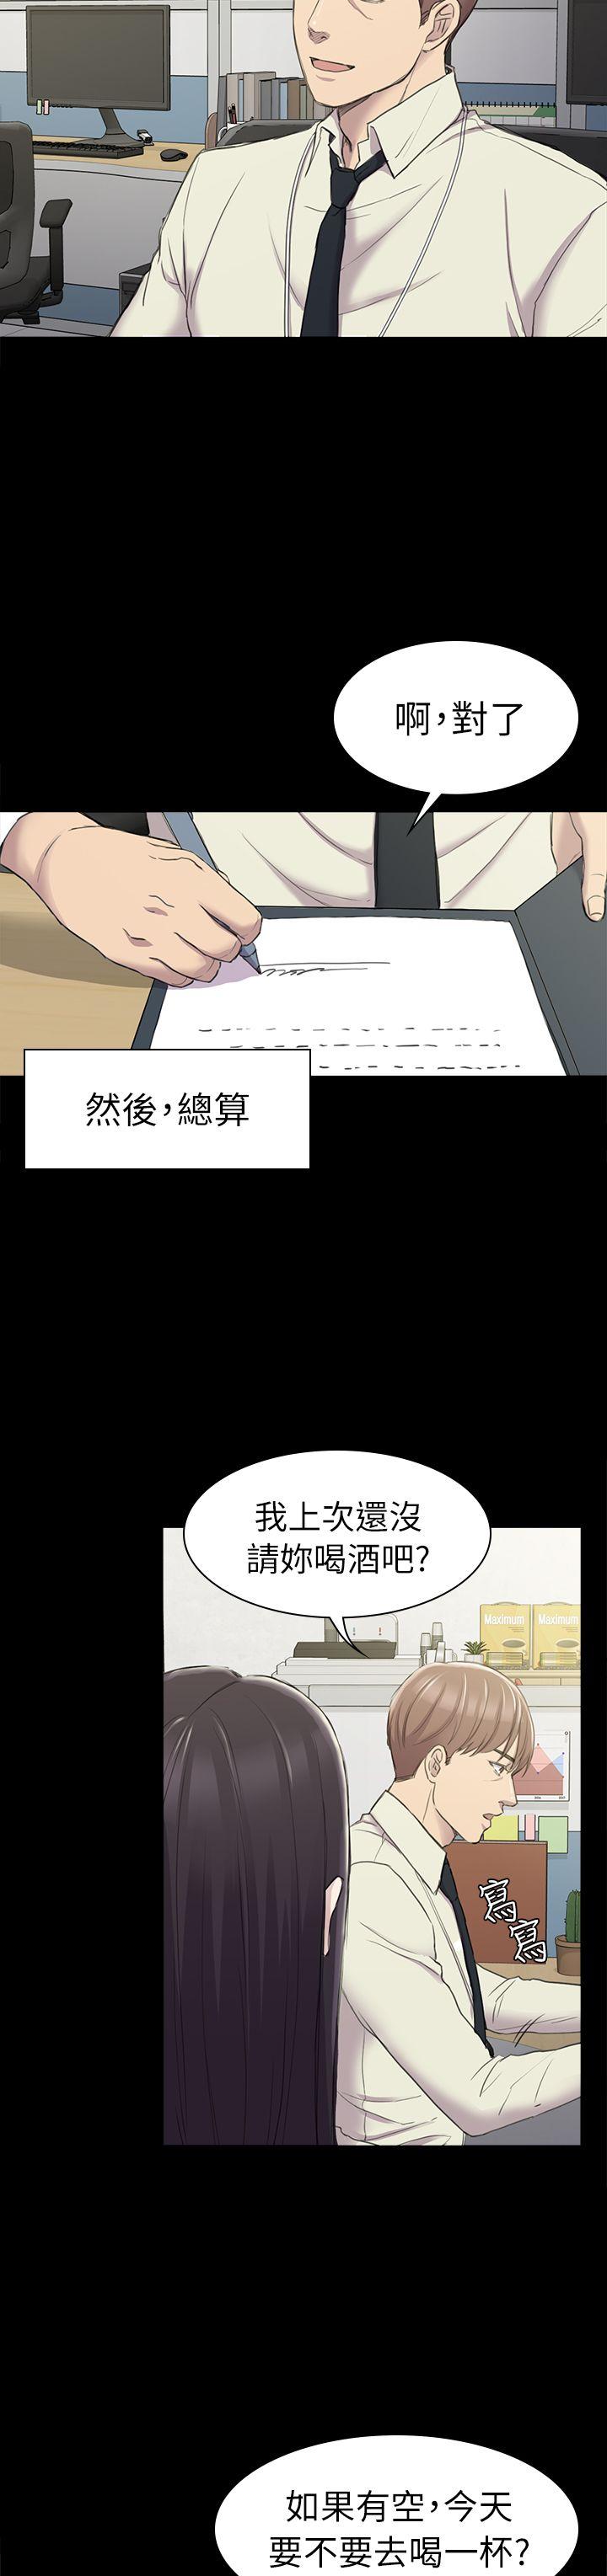 韩国污漫画 初戀陷阱 第25话-组长和女组员 29